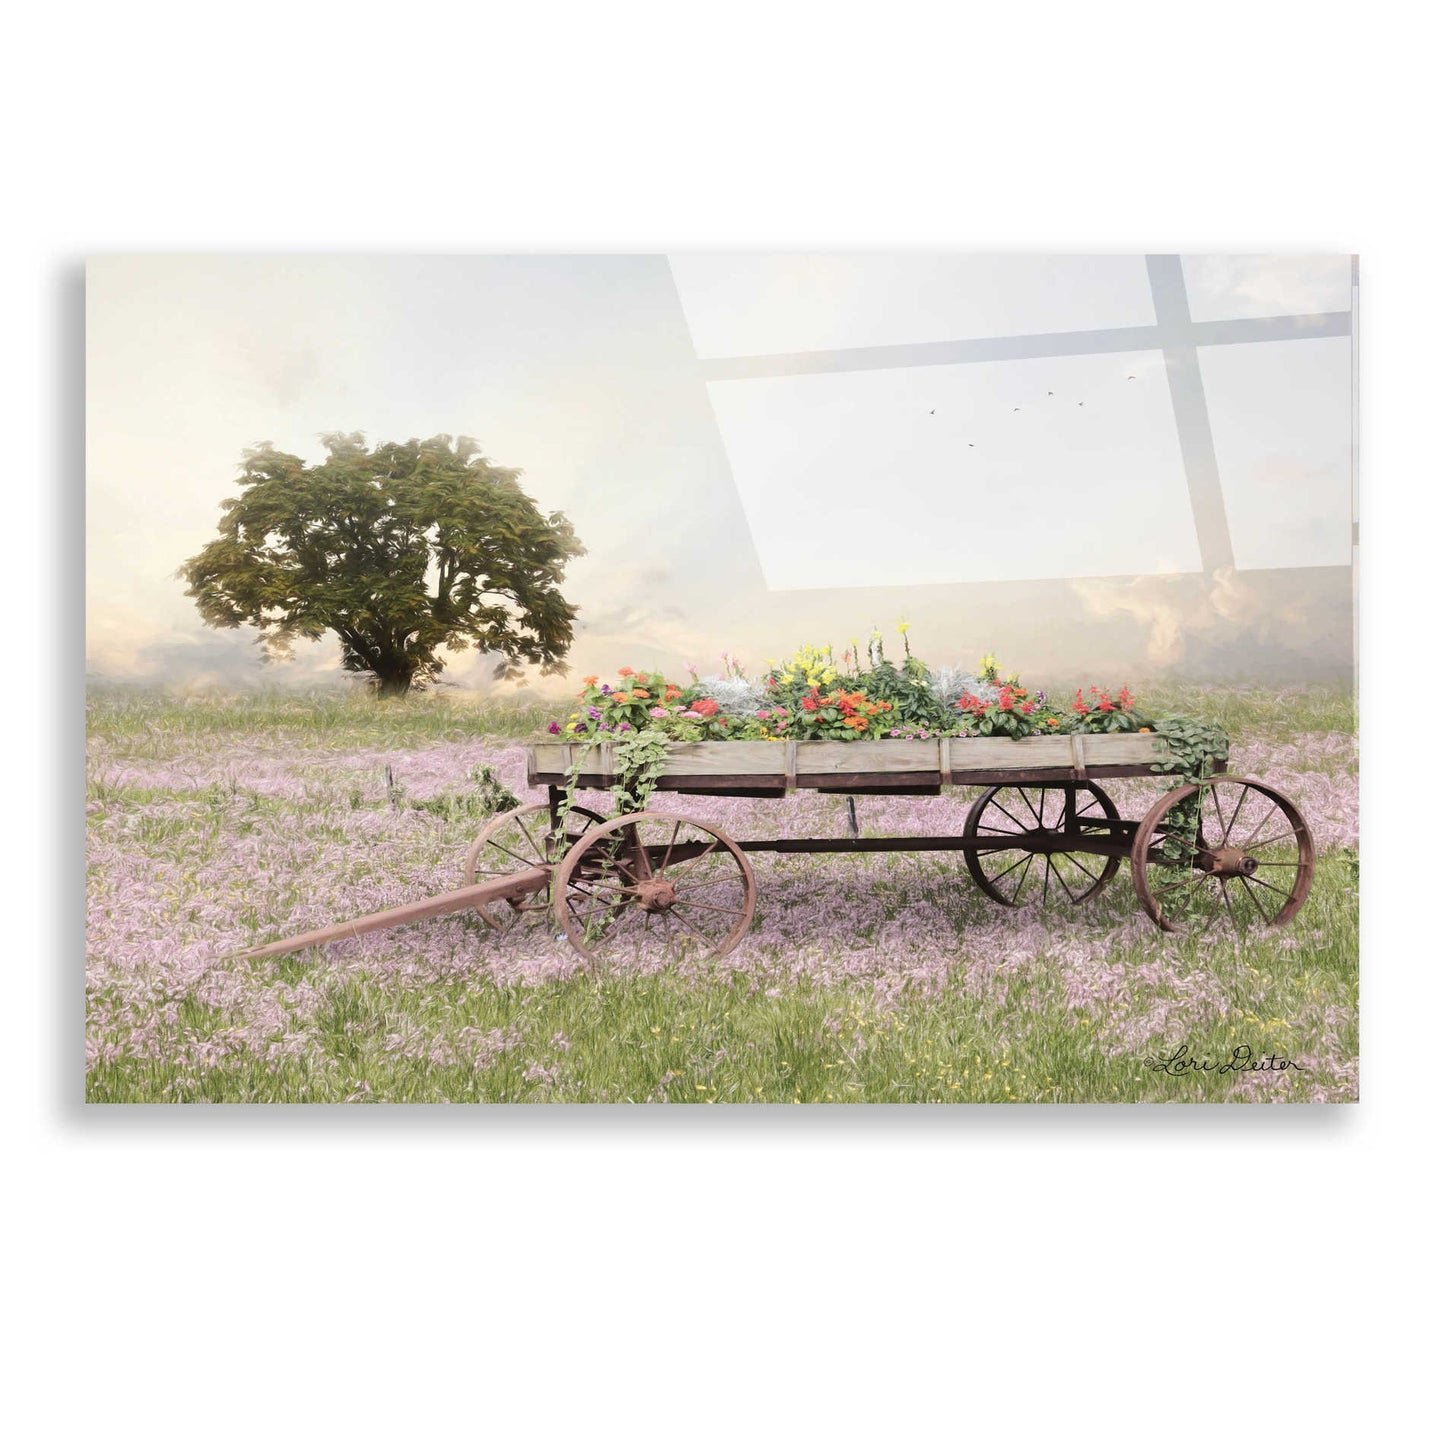 Epic Art 'Flower Wagon at Sunset' by Lori Deiter, Acrylic Glass Wall Art,24x16